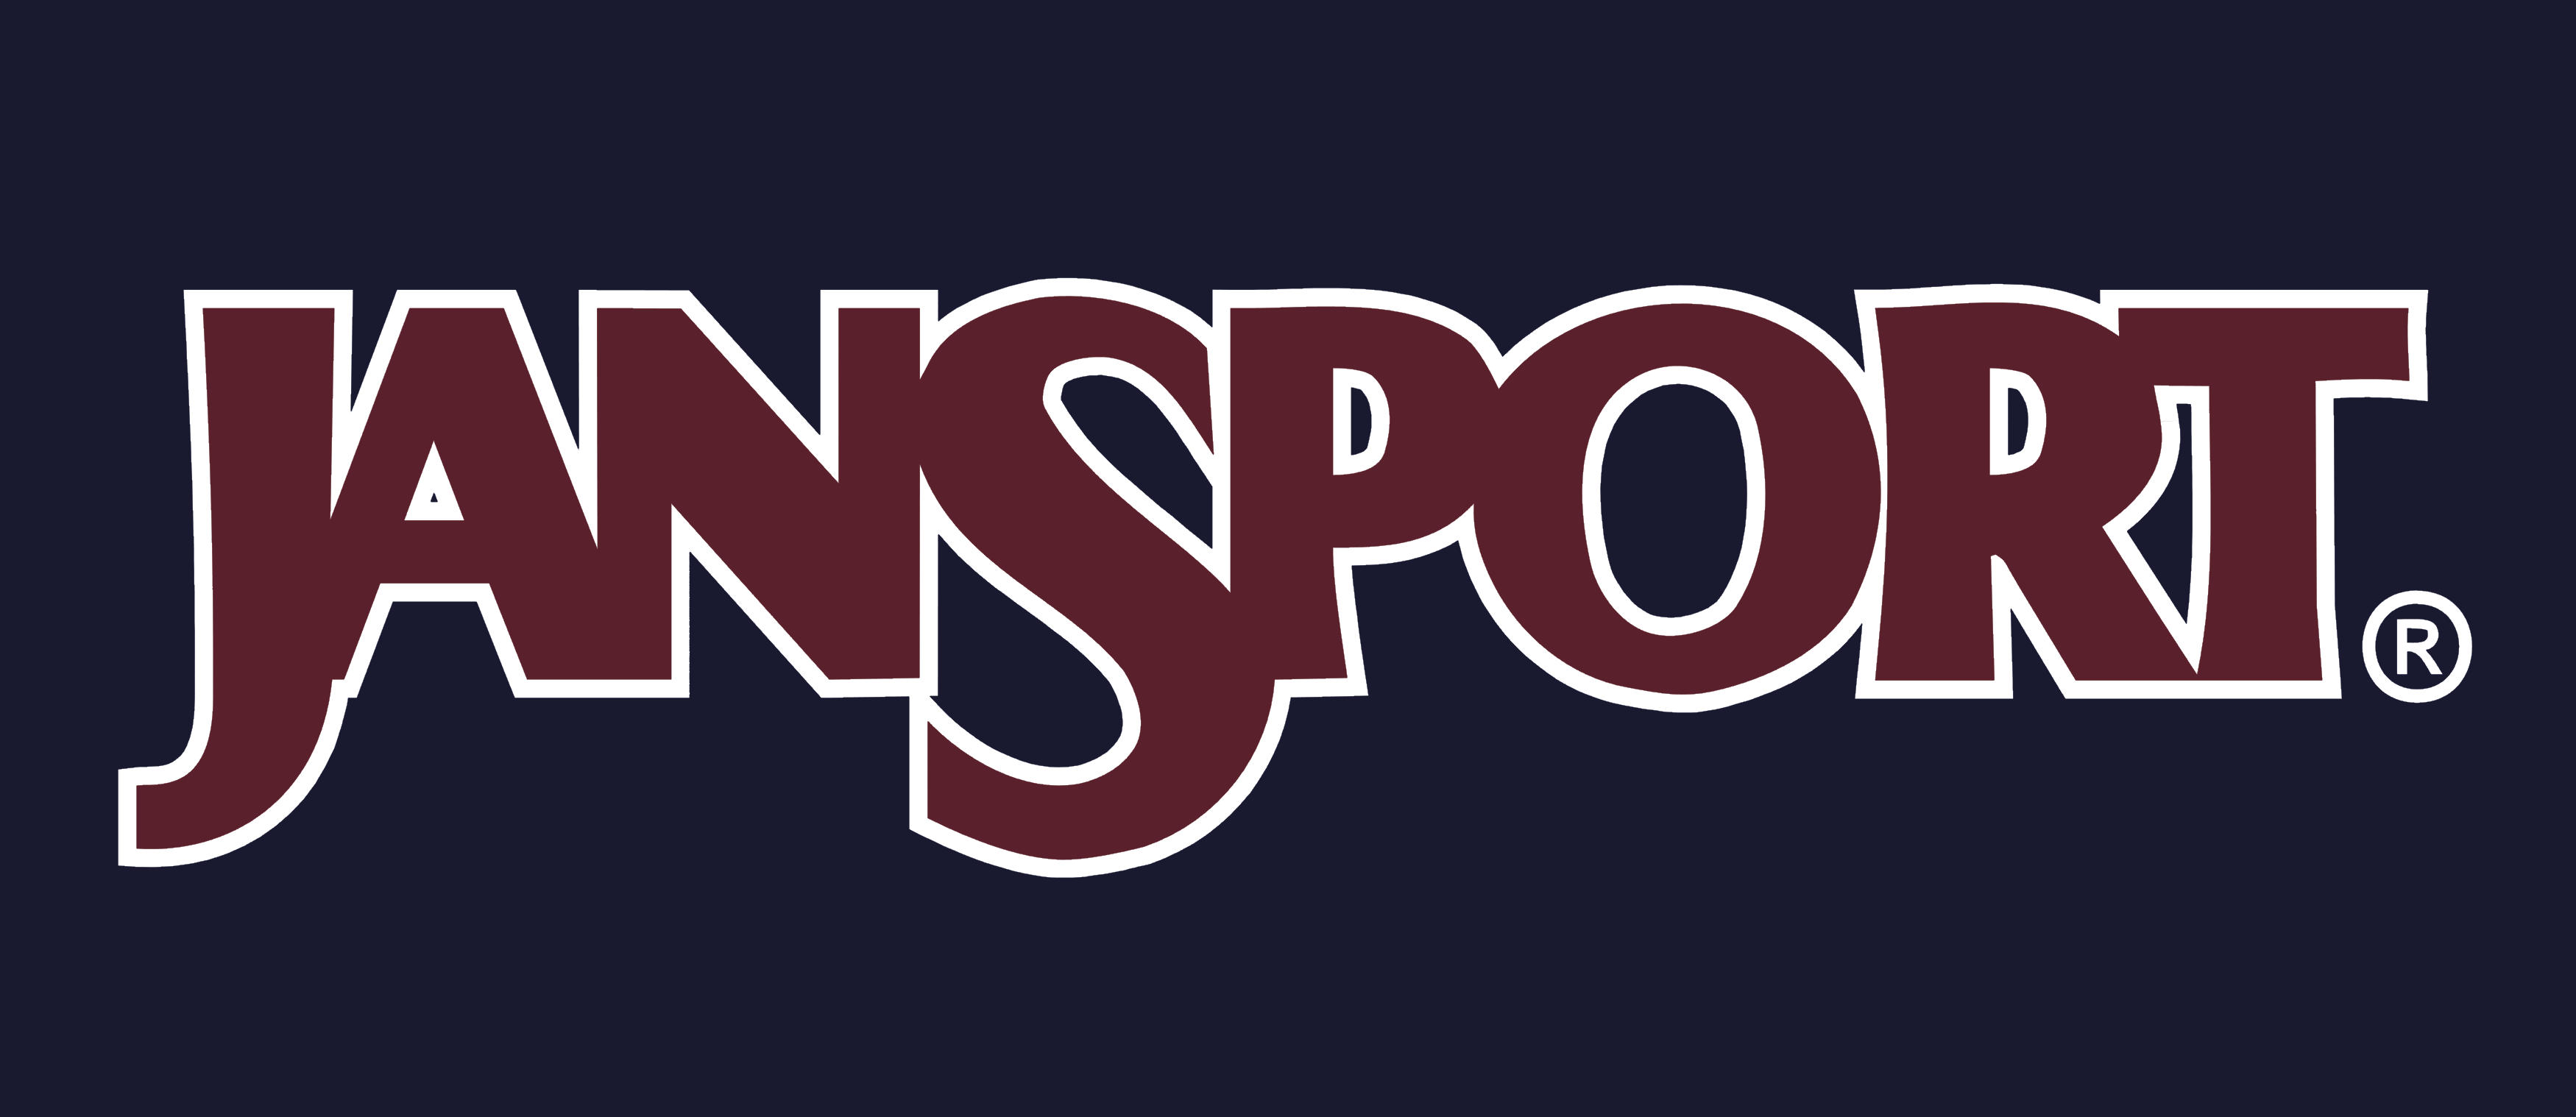 Old JanSport Logo - JanSport logo